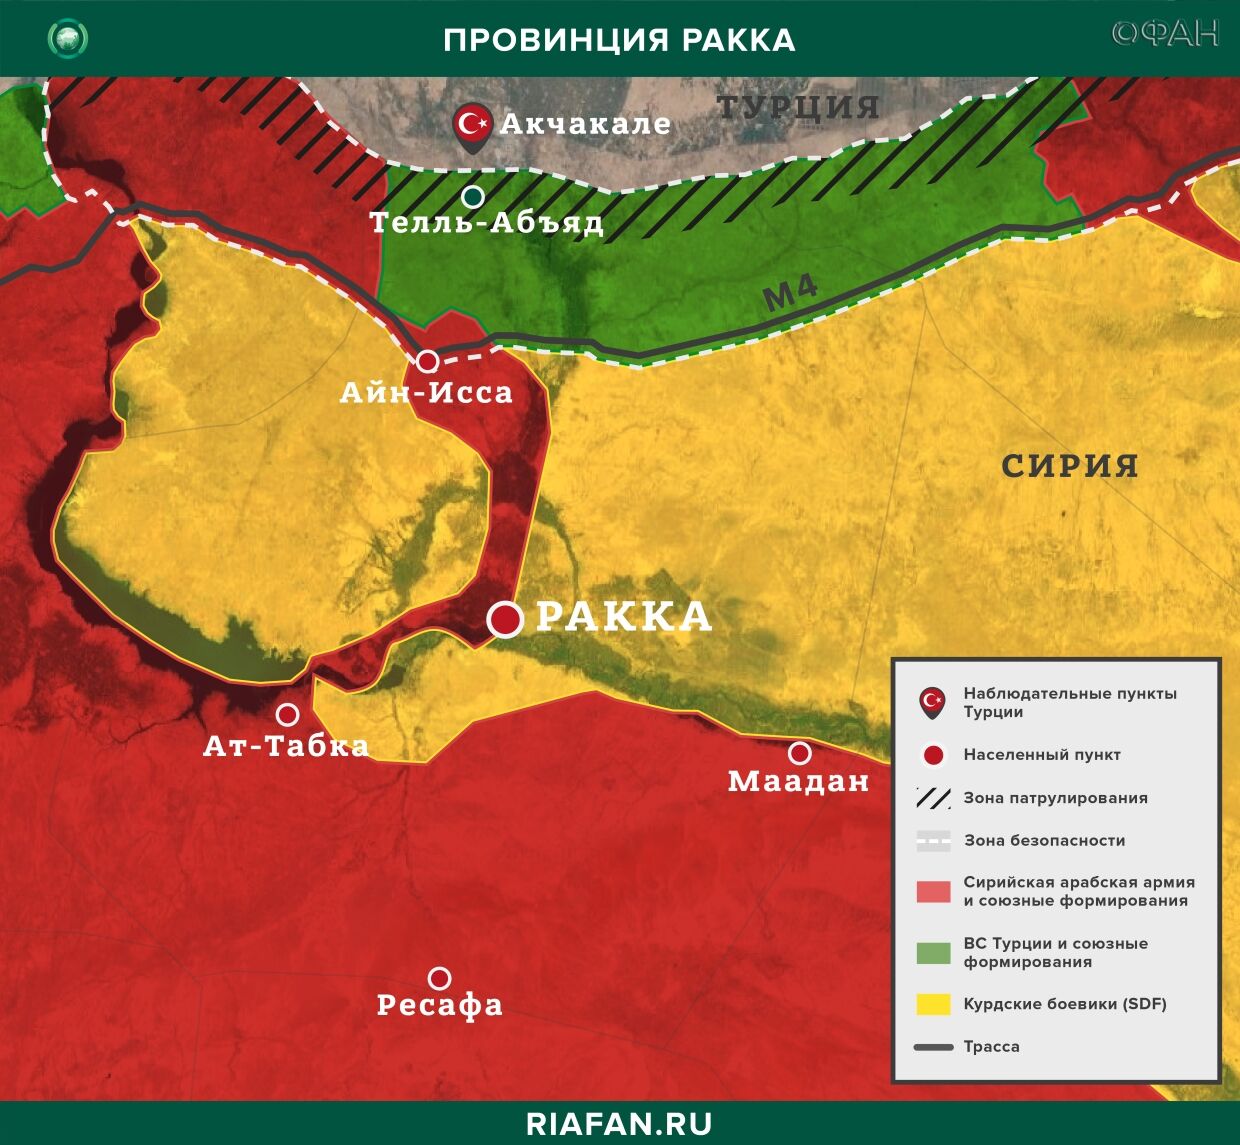 Resultados diarios de Siria para 5 Junio 06.00: конвой США забросали камнями, взрыв у зоны совместного патрулирования Турции и РФ в Идлибе